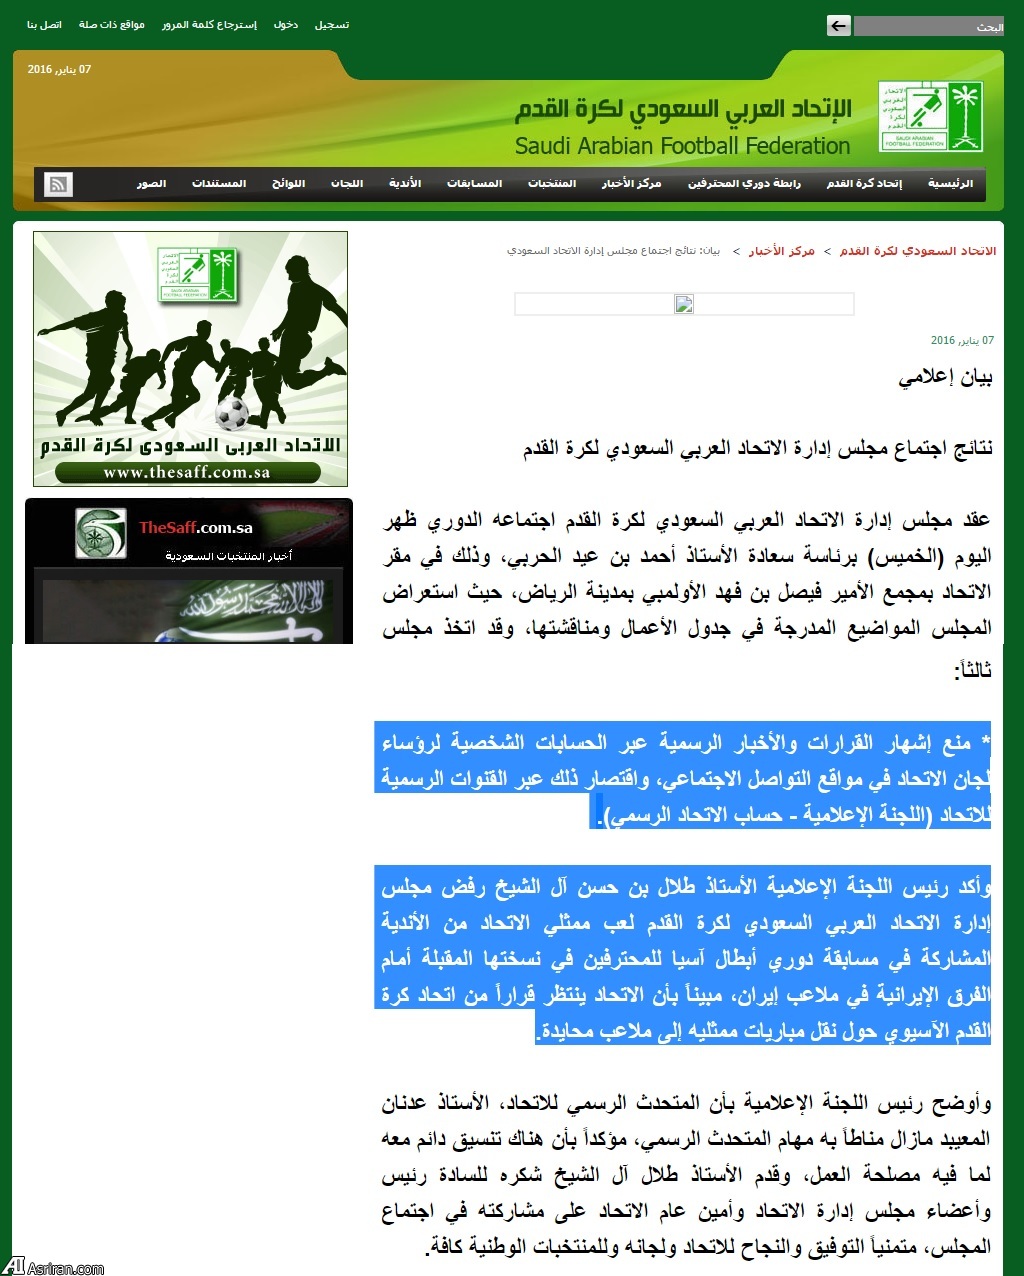 اظهار نظرهای غیررسمی مسوولان فوتبال عربستان و عقب نشینی رسمی (+عکس)